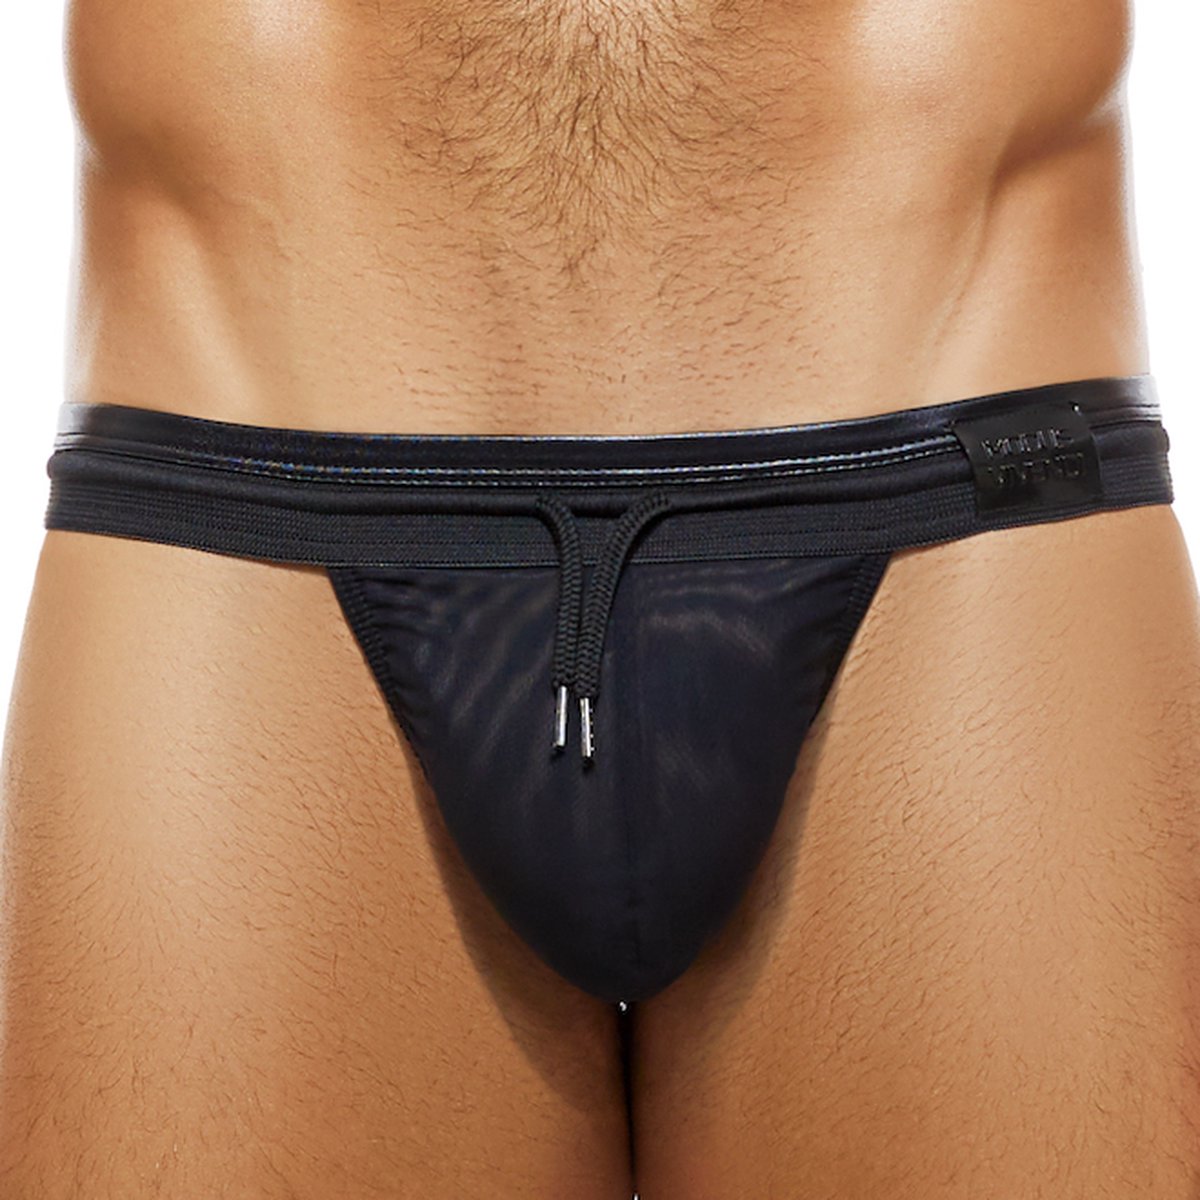 Modus Vivendi - Latex T-String Mesh Zwart - Maat M - Heren String - Latex Look - Ondergoed voor mannen